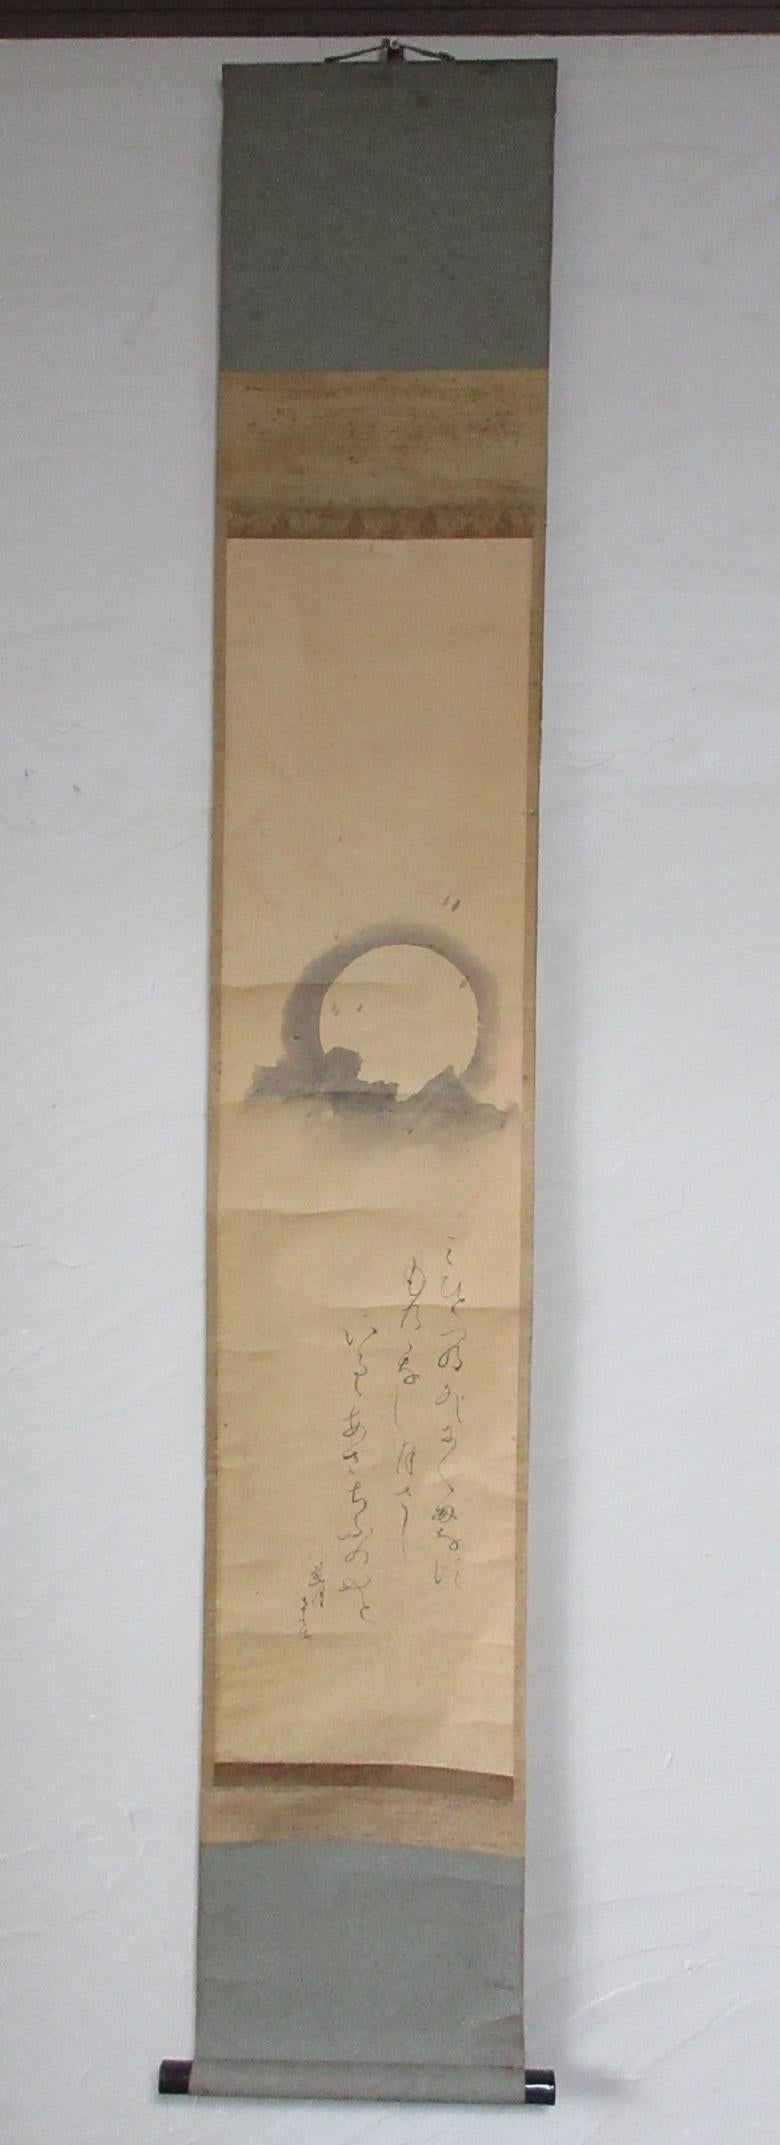 Japon, rare rouleau de papier peint à la main par le célèbre Rengetsu Otagaki (1791-1875).  Elle était une nonne très célèbre dans l'ancien Japon et, étant familière de la poésie, ses poèmes Waka sur papier, et en particulier ses rouleaux difficiles